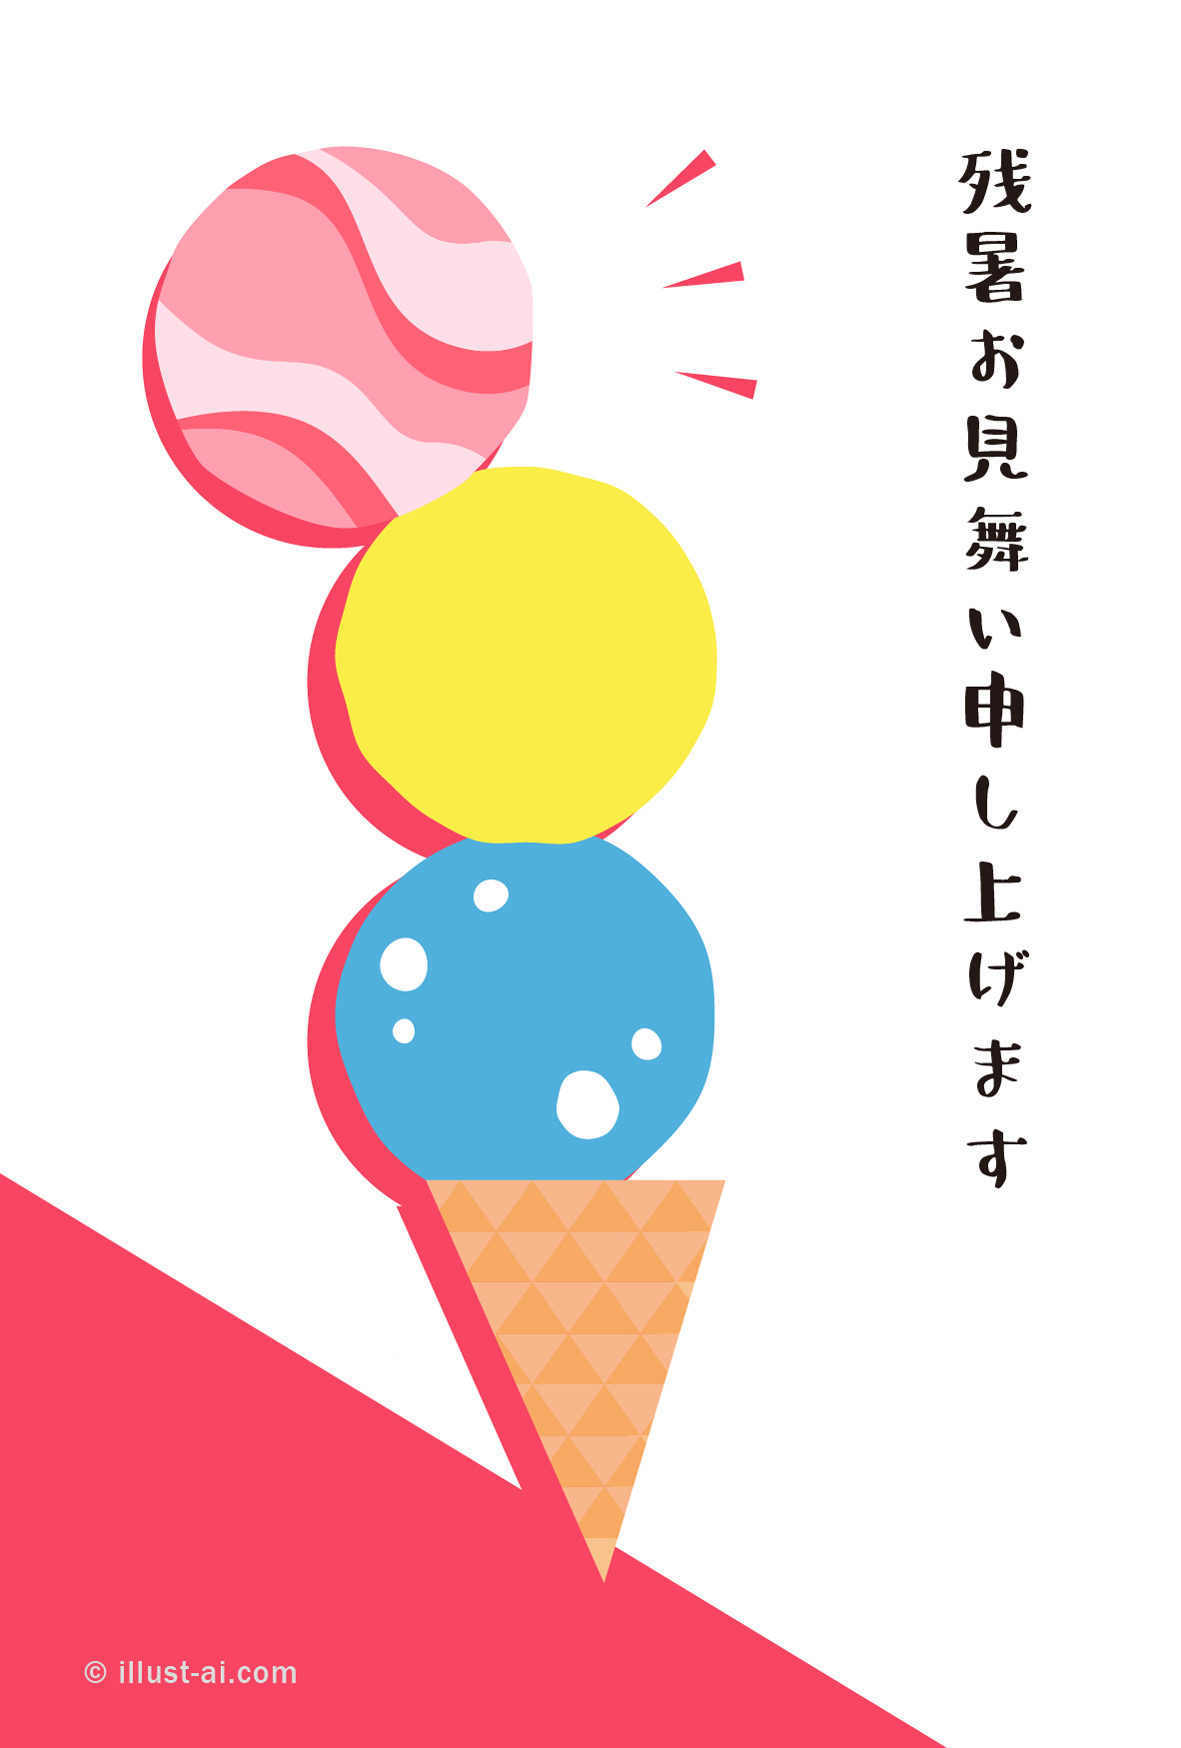 ３段アイスクリーム 残暑お見舞い ポストカード イラスト素材サイト イラストareira Postcard Template